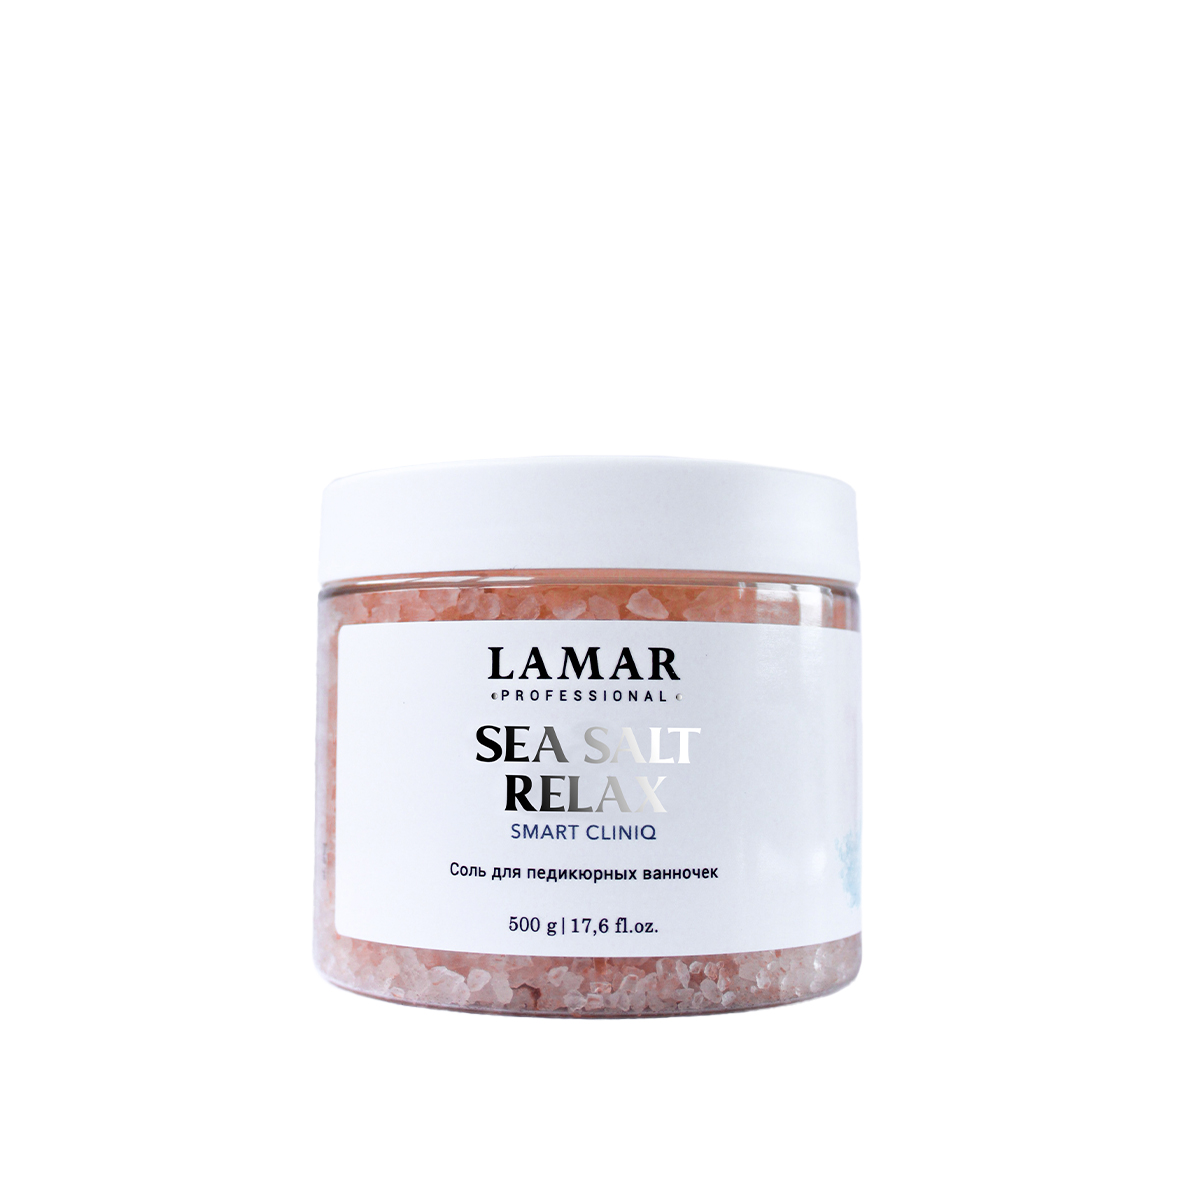 Соль для педикюрных ванночек Lamar Professional Sea salt relax 500 г